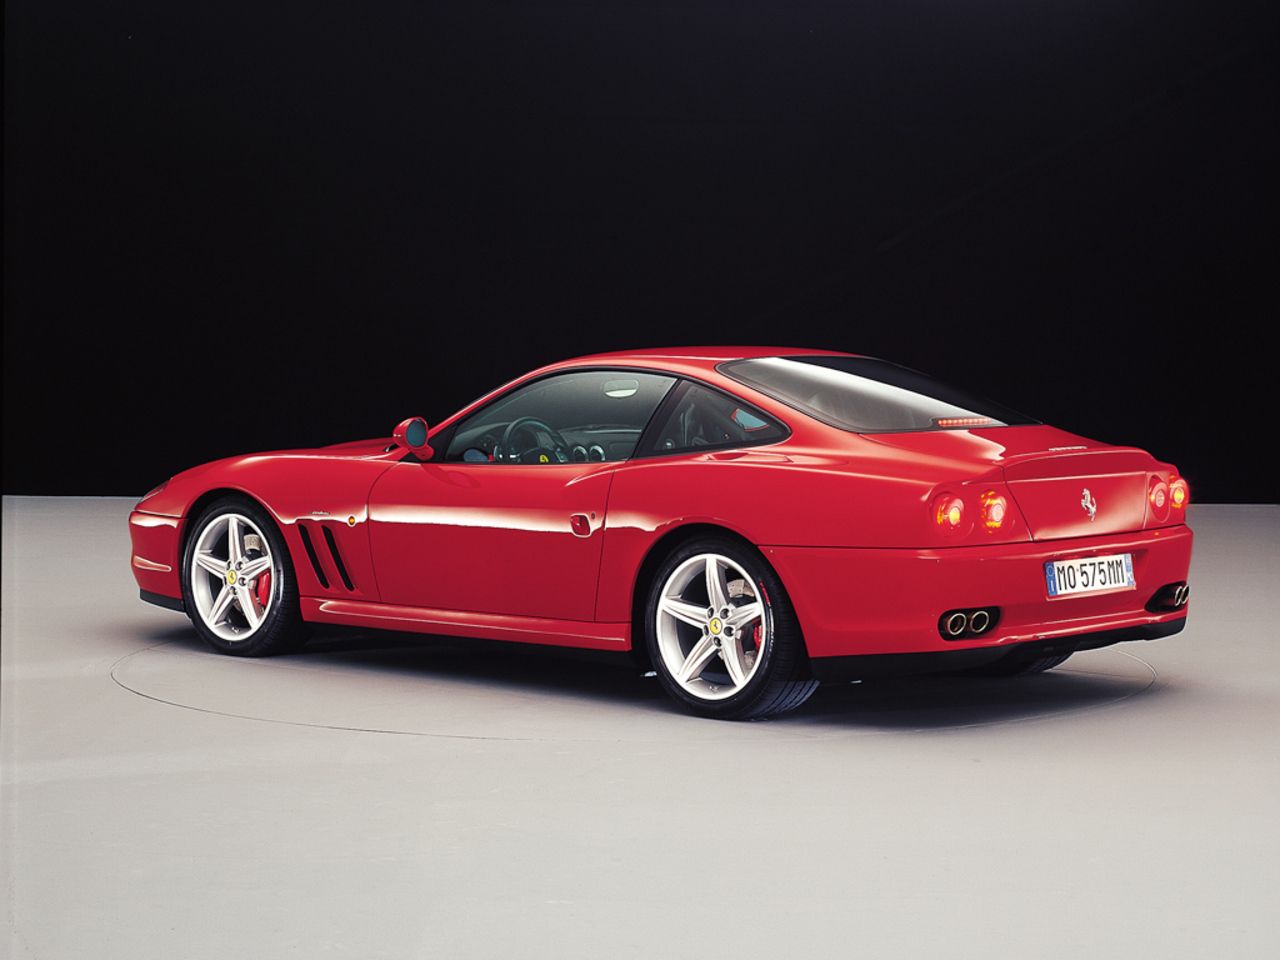 2002 - 2006 Ferrari 575M Maranello